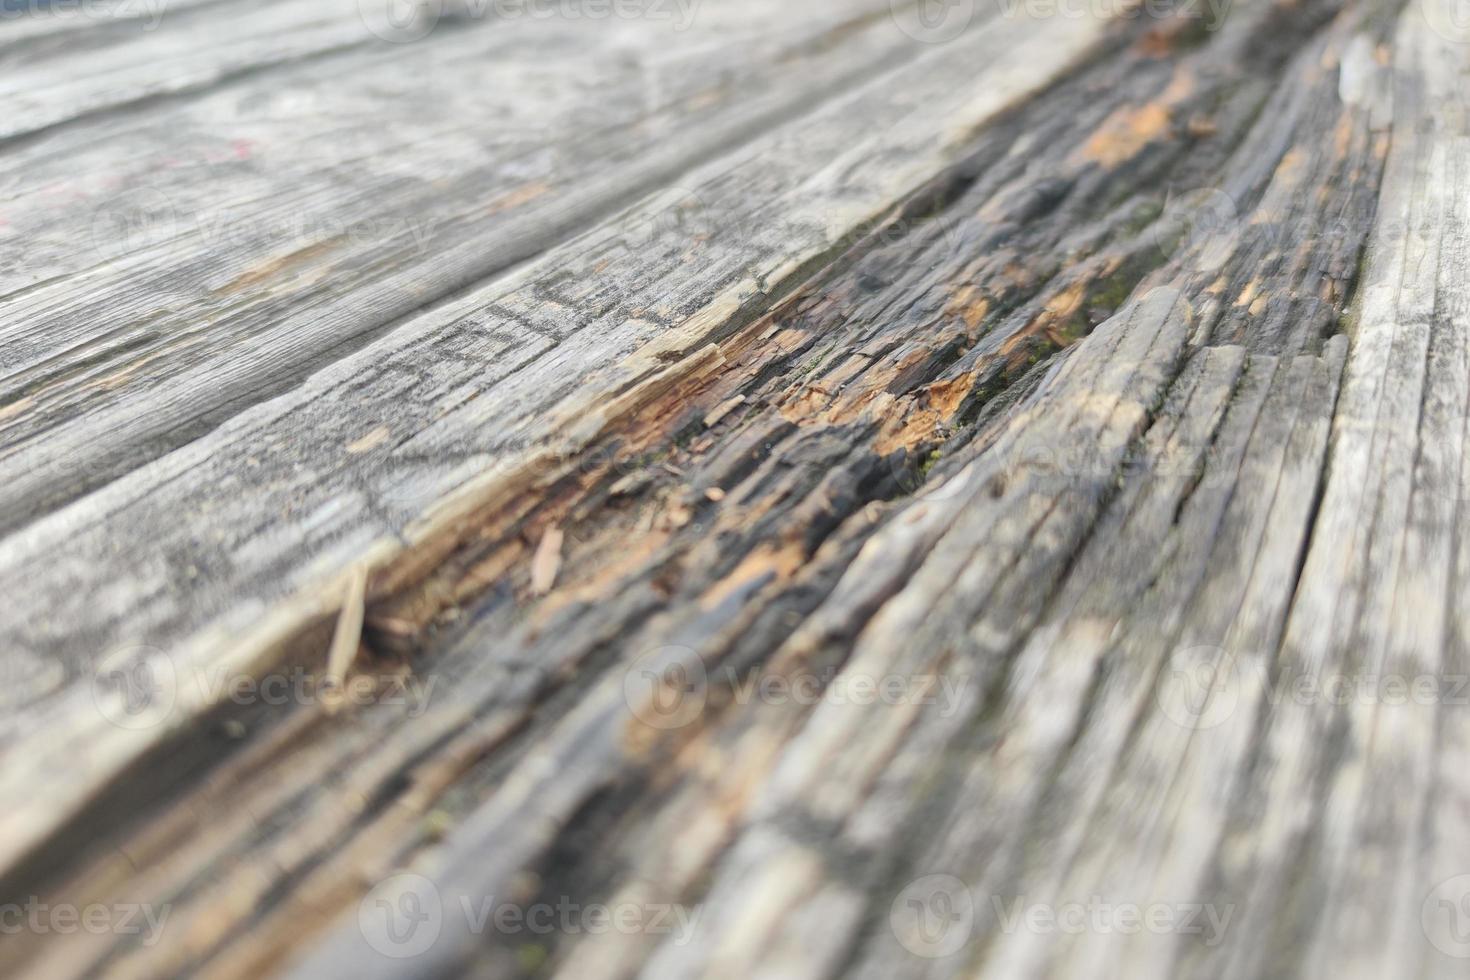 detalhe de mesa de madeira riscada antiga foto